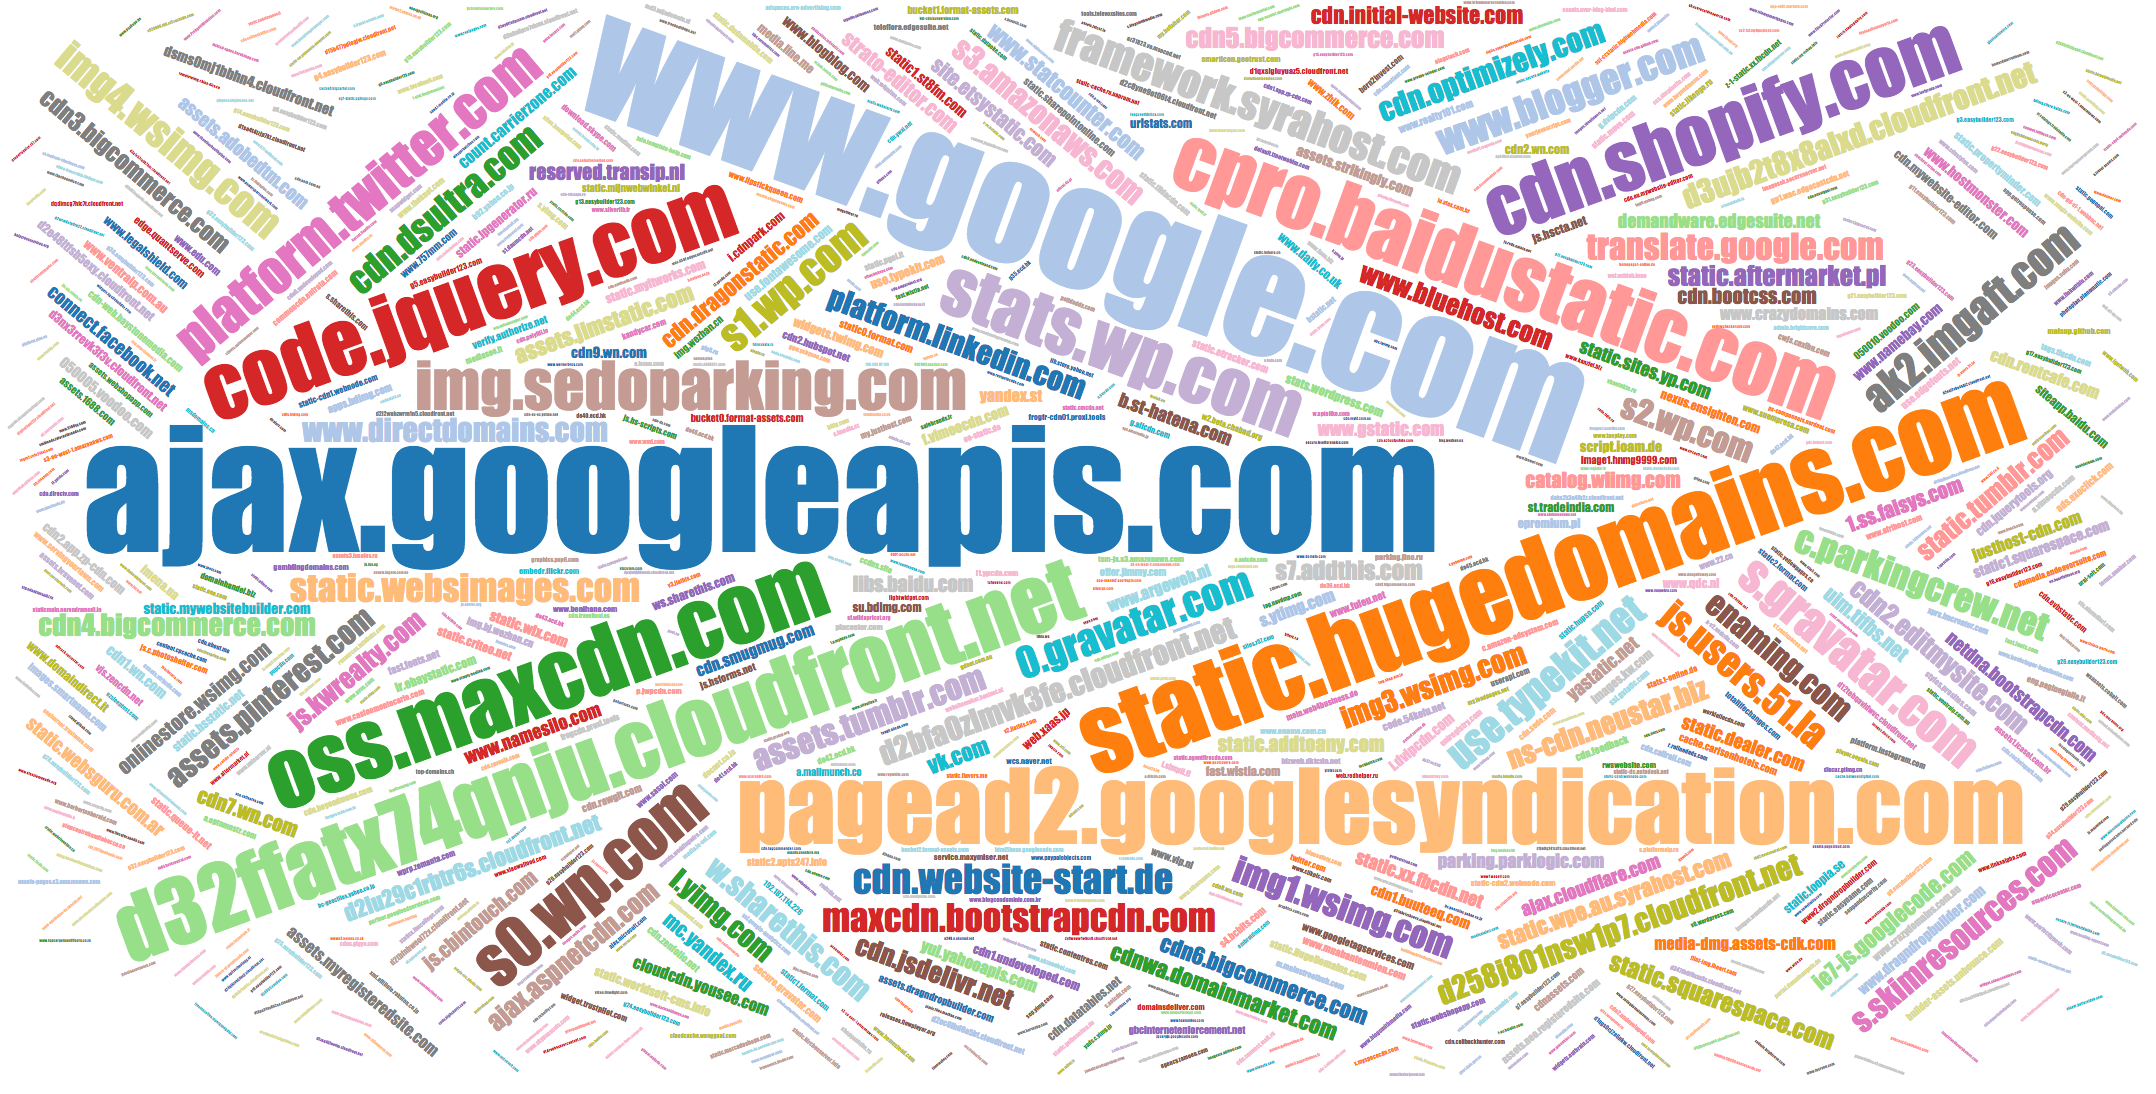 Popular names of JS domains images.smartname.com, img1.wsimg.com, etc.